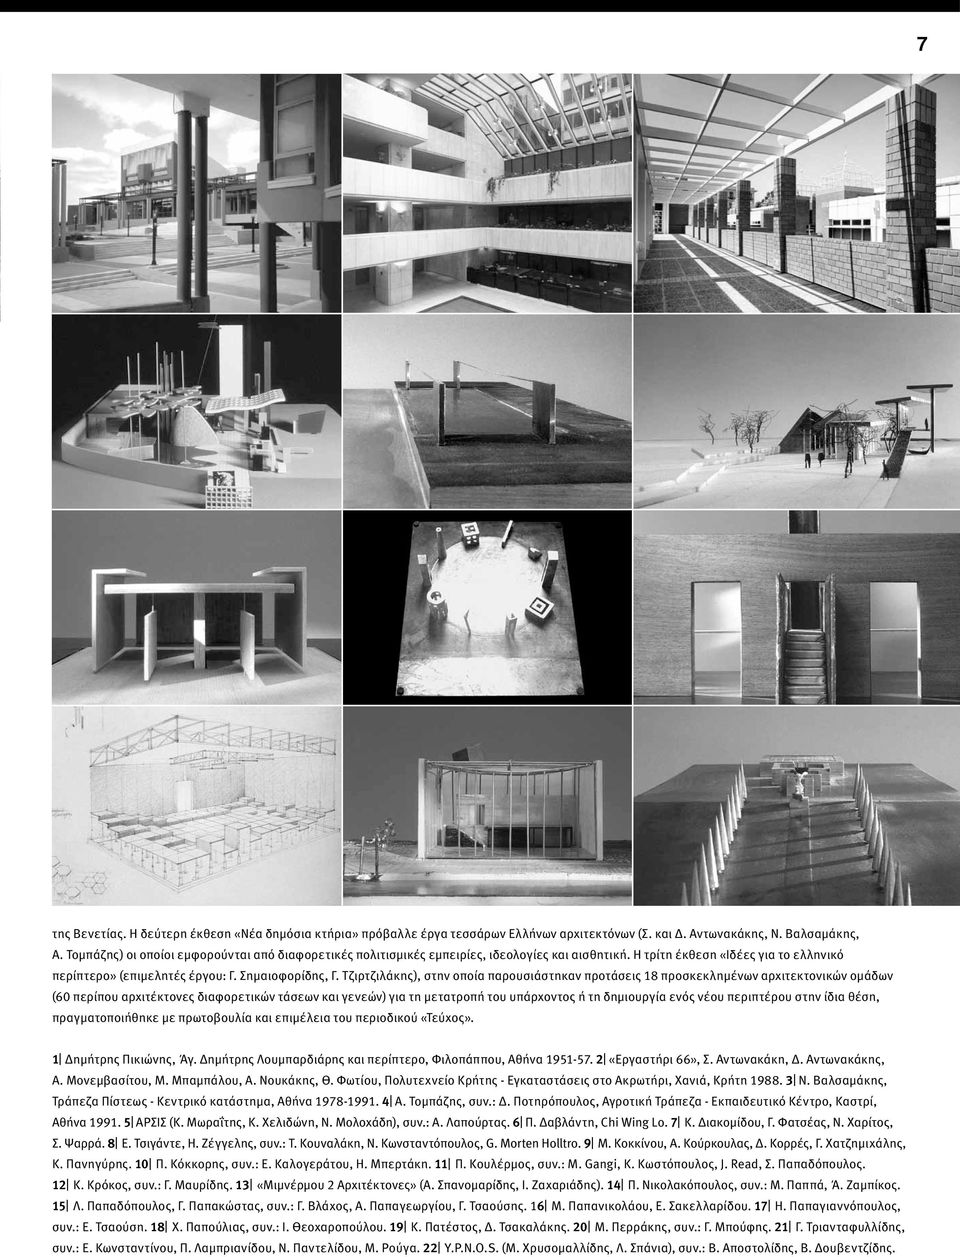 Τζιρτζιλάκης), στην οποία παρουσιάστηκαν προτάσεις 18 προσκεκλημένων αρχιτεκτονικών ομάδων (60 περίπου αρχιτέκτονες διαφορετικών τάσεων και γενεών) για τη μετατροπή του υπάρχοντος ή τη δημιουργία